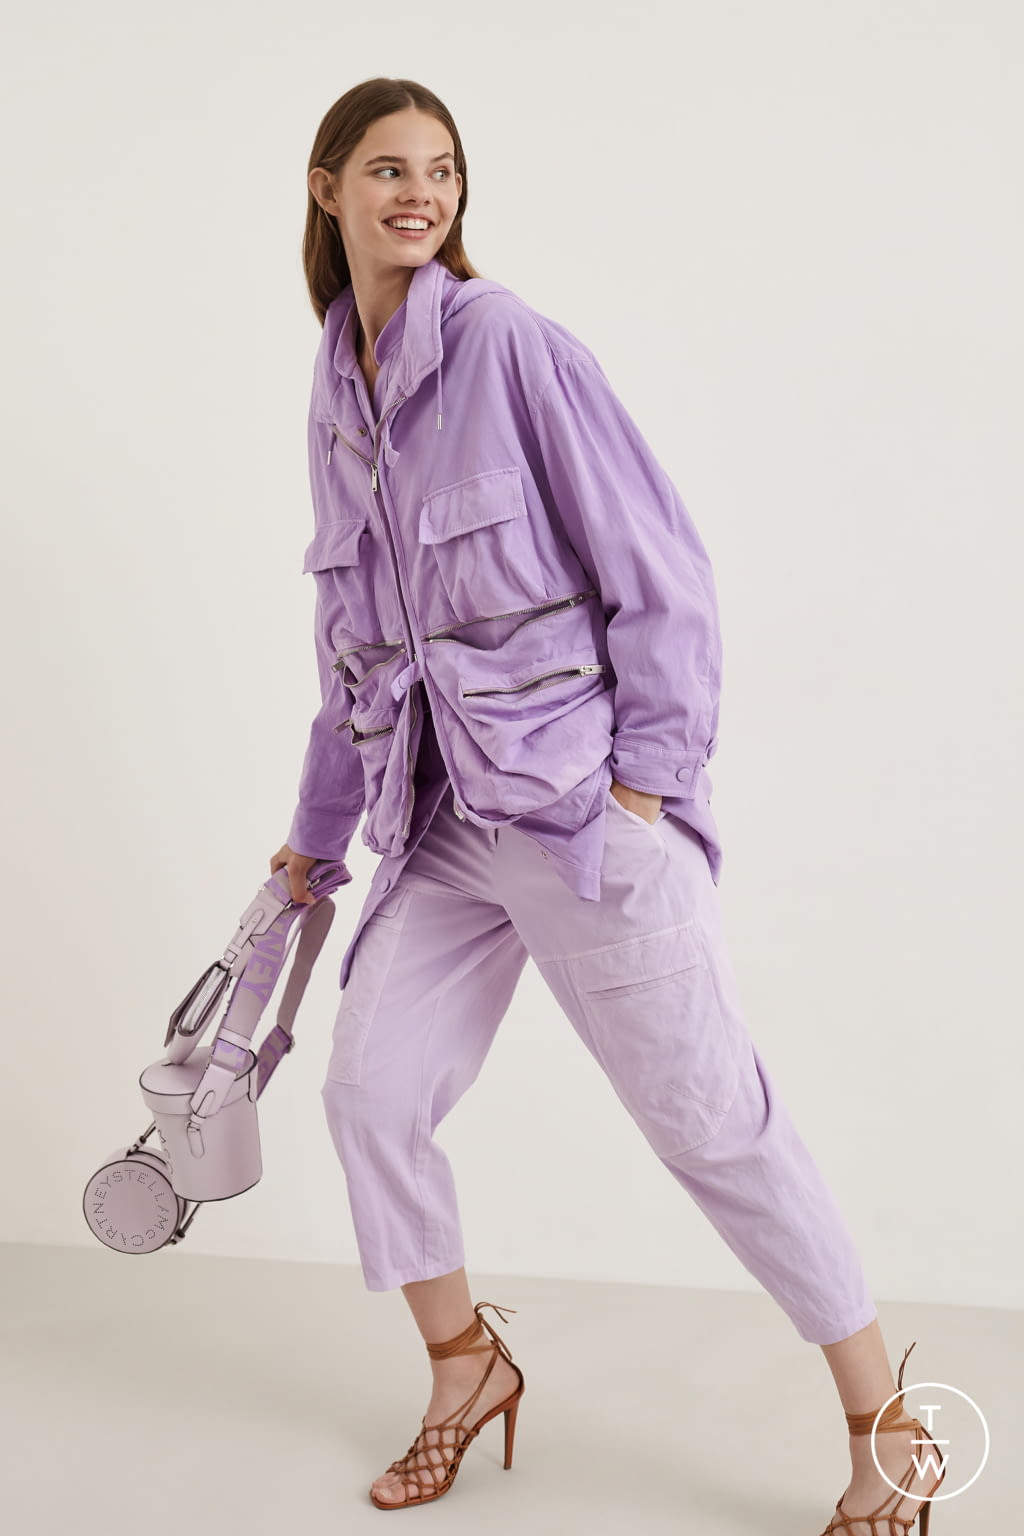 Stella McCartney Resort 20 womenswear #28 - Tagwalk: The Fashion Search ...